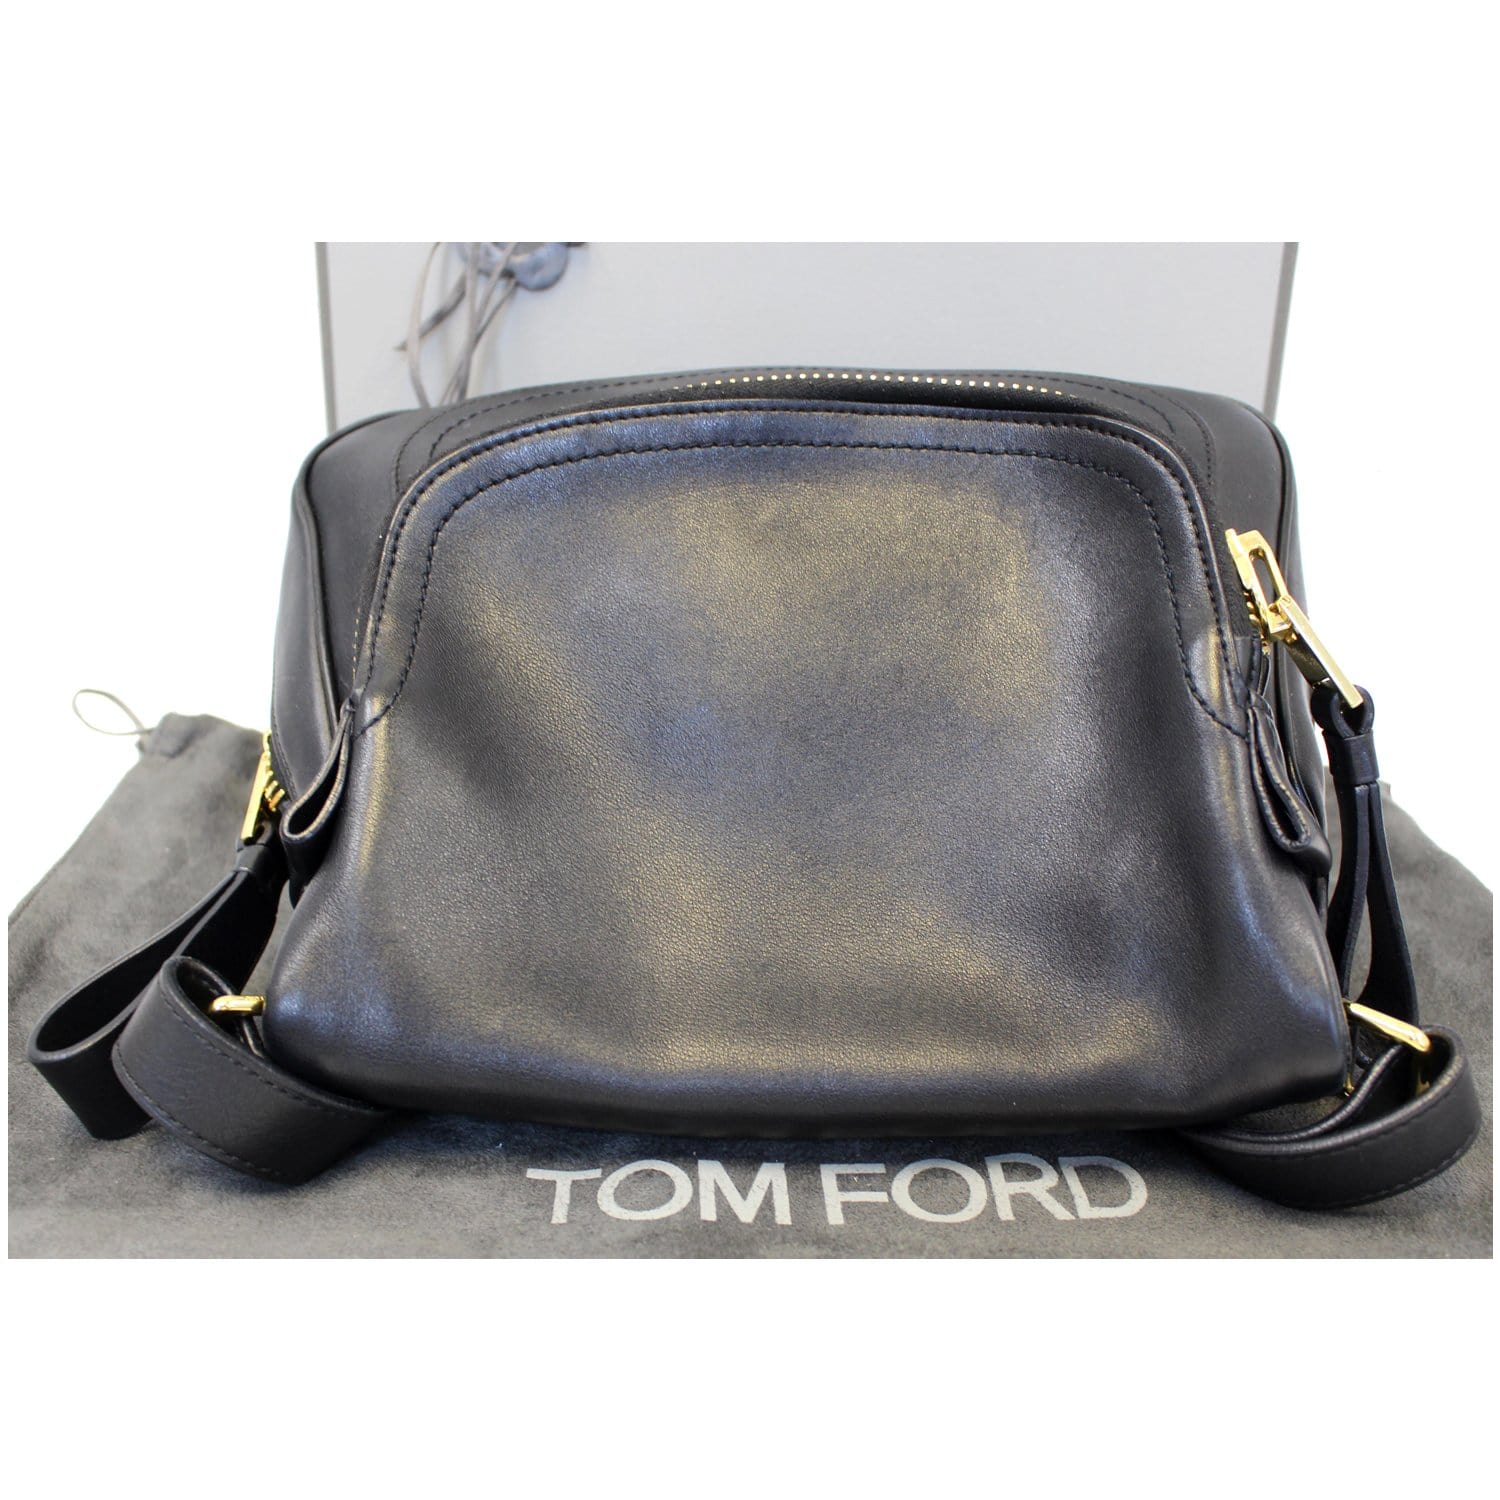 Tom Ford Jennifer leather shoulder bag